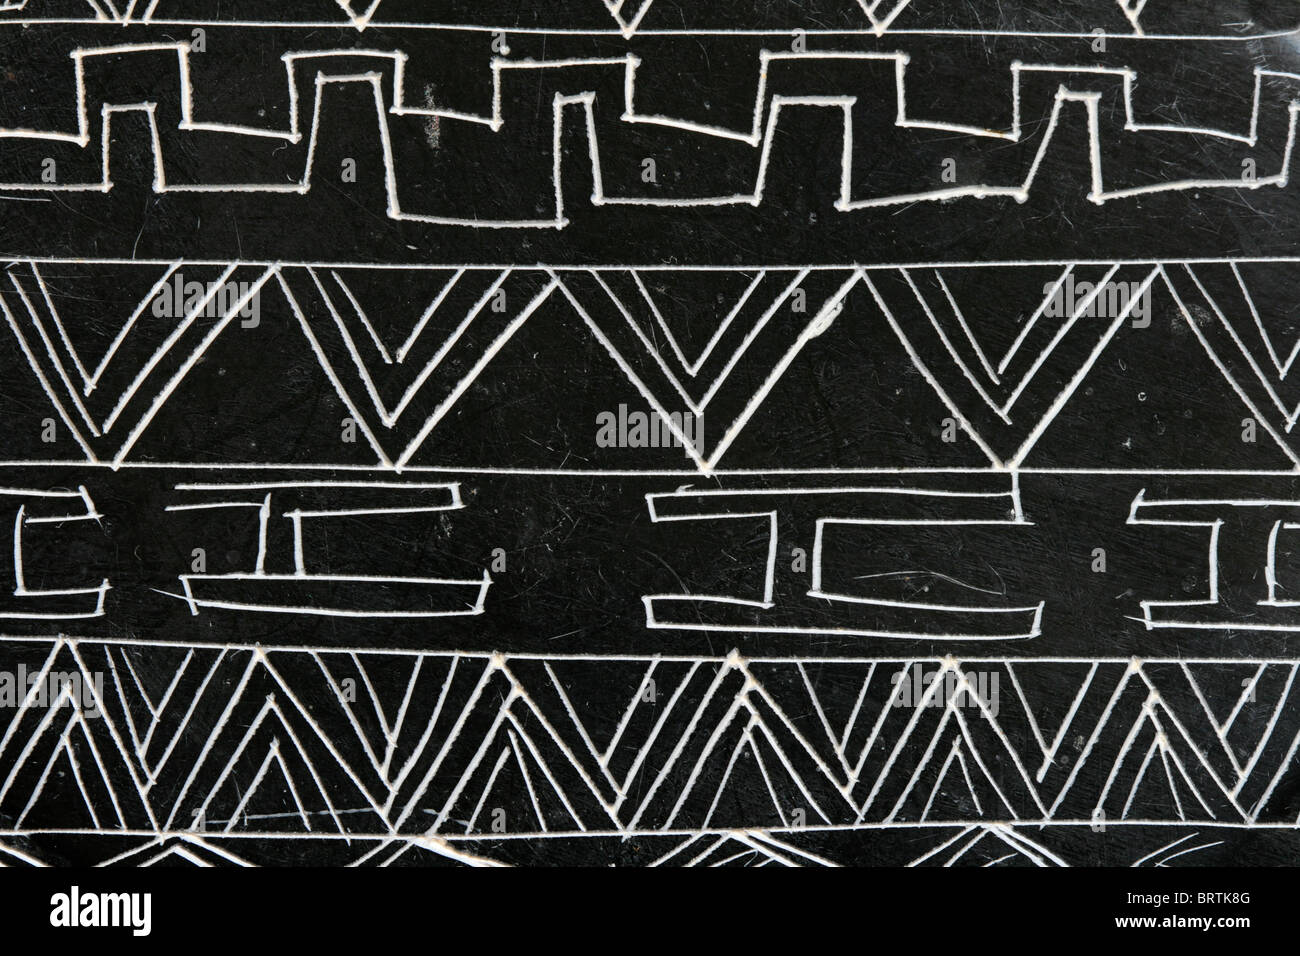 Detail eines geschnitzten Speckstein-Objekts mit abstrakten Mustern in weiß auf schwarz Stockfoto